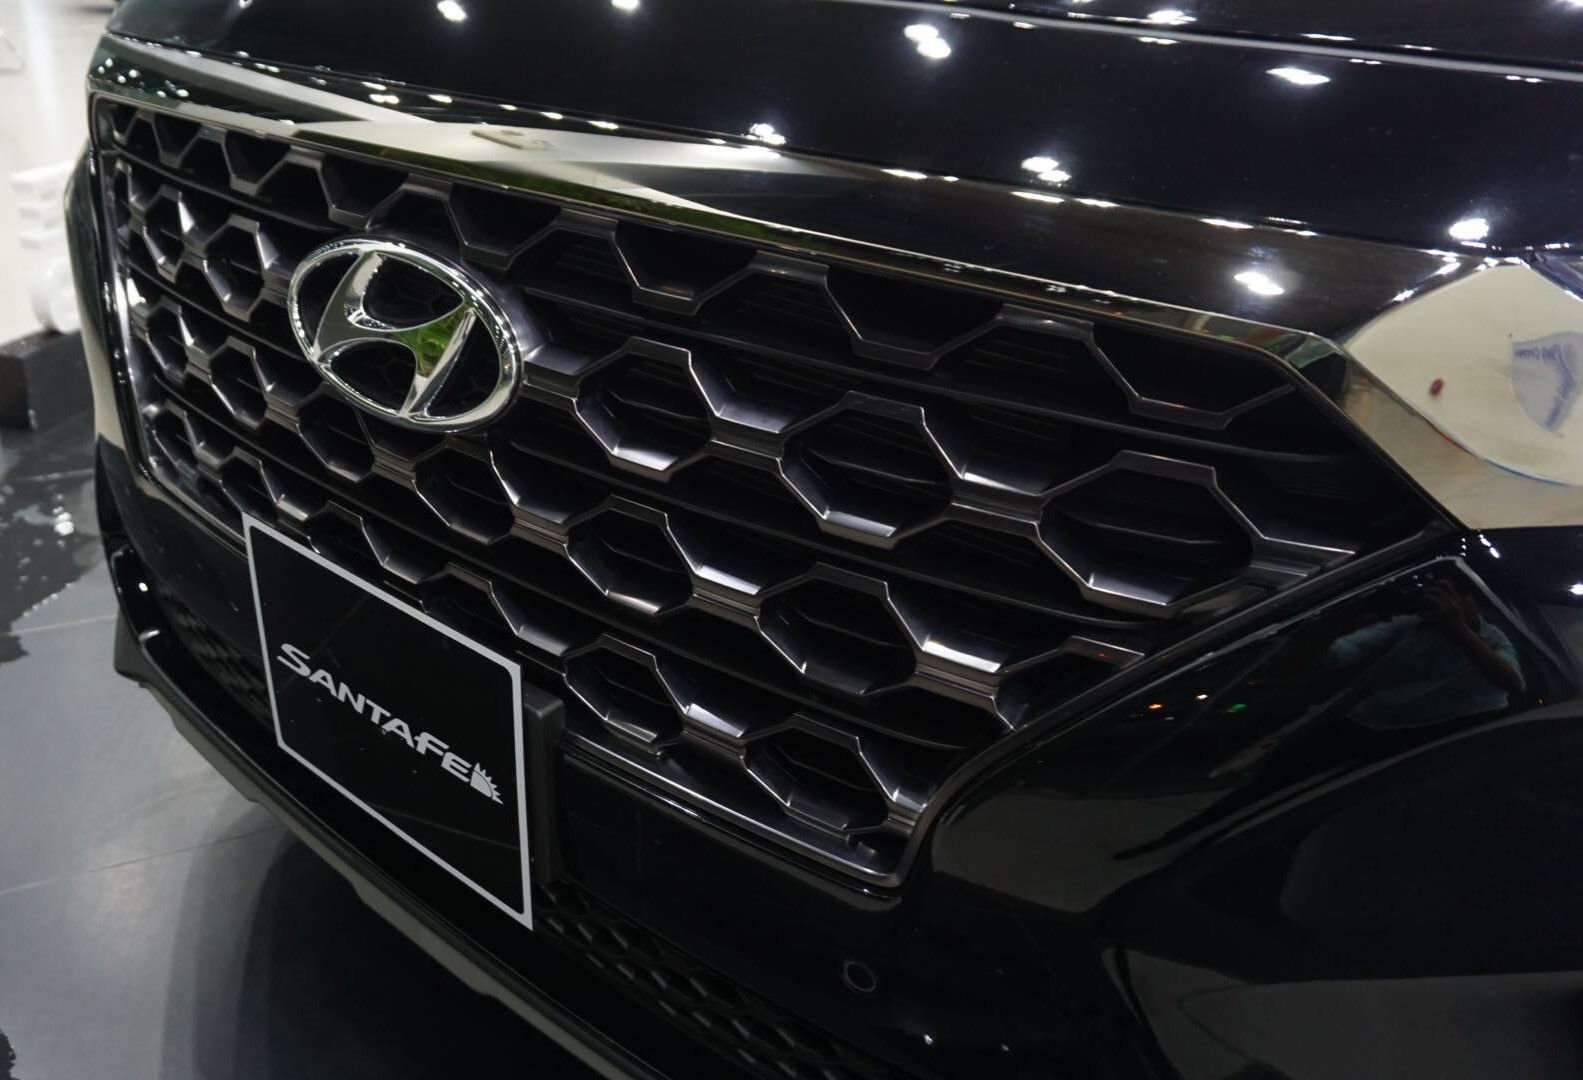 Hyundai SantaFe thế hệ mới đã về các đại lý, sẽ bán ra vào tháng 12/2018